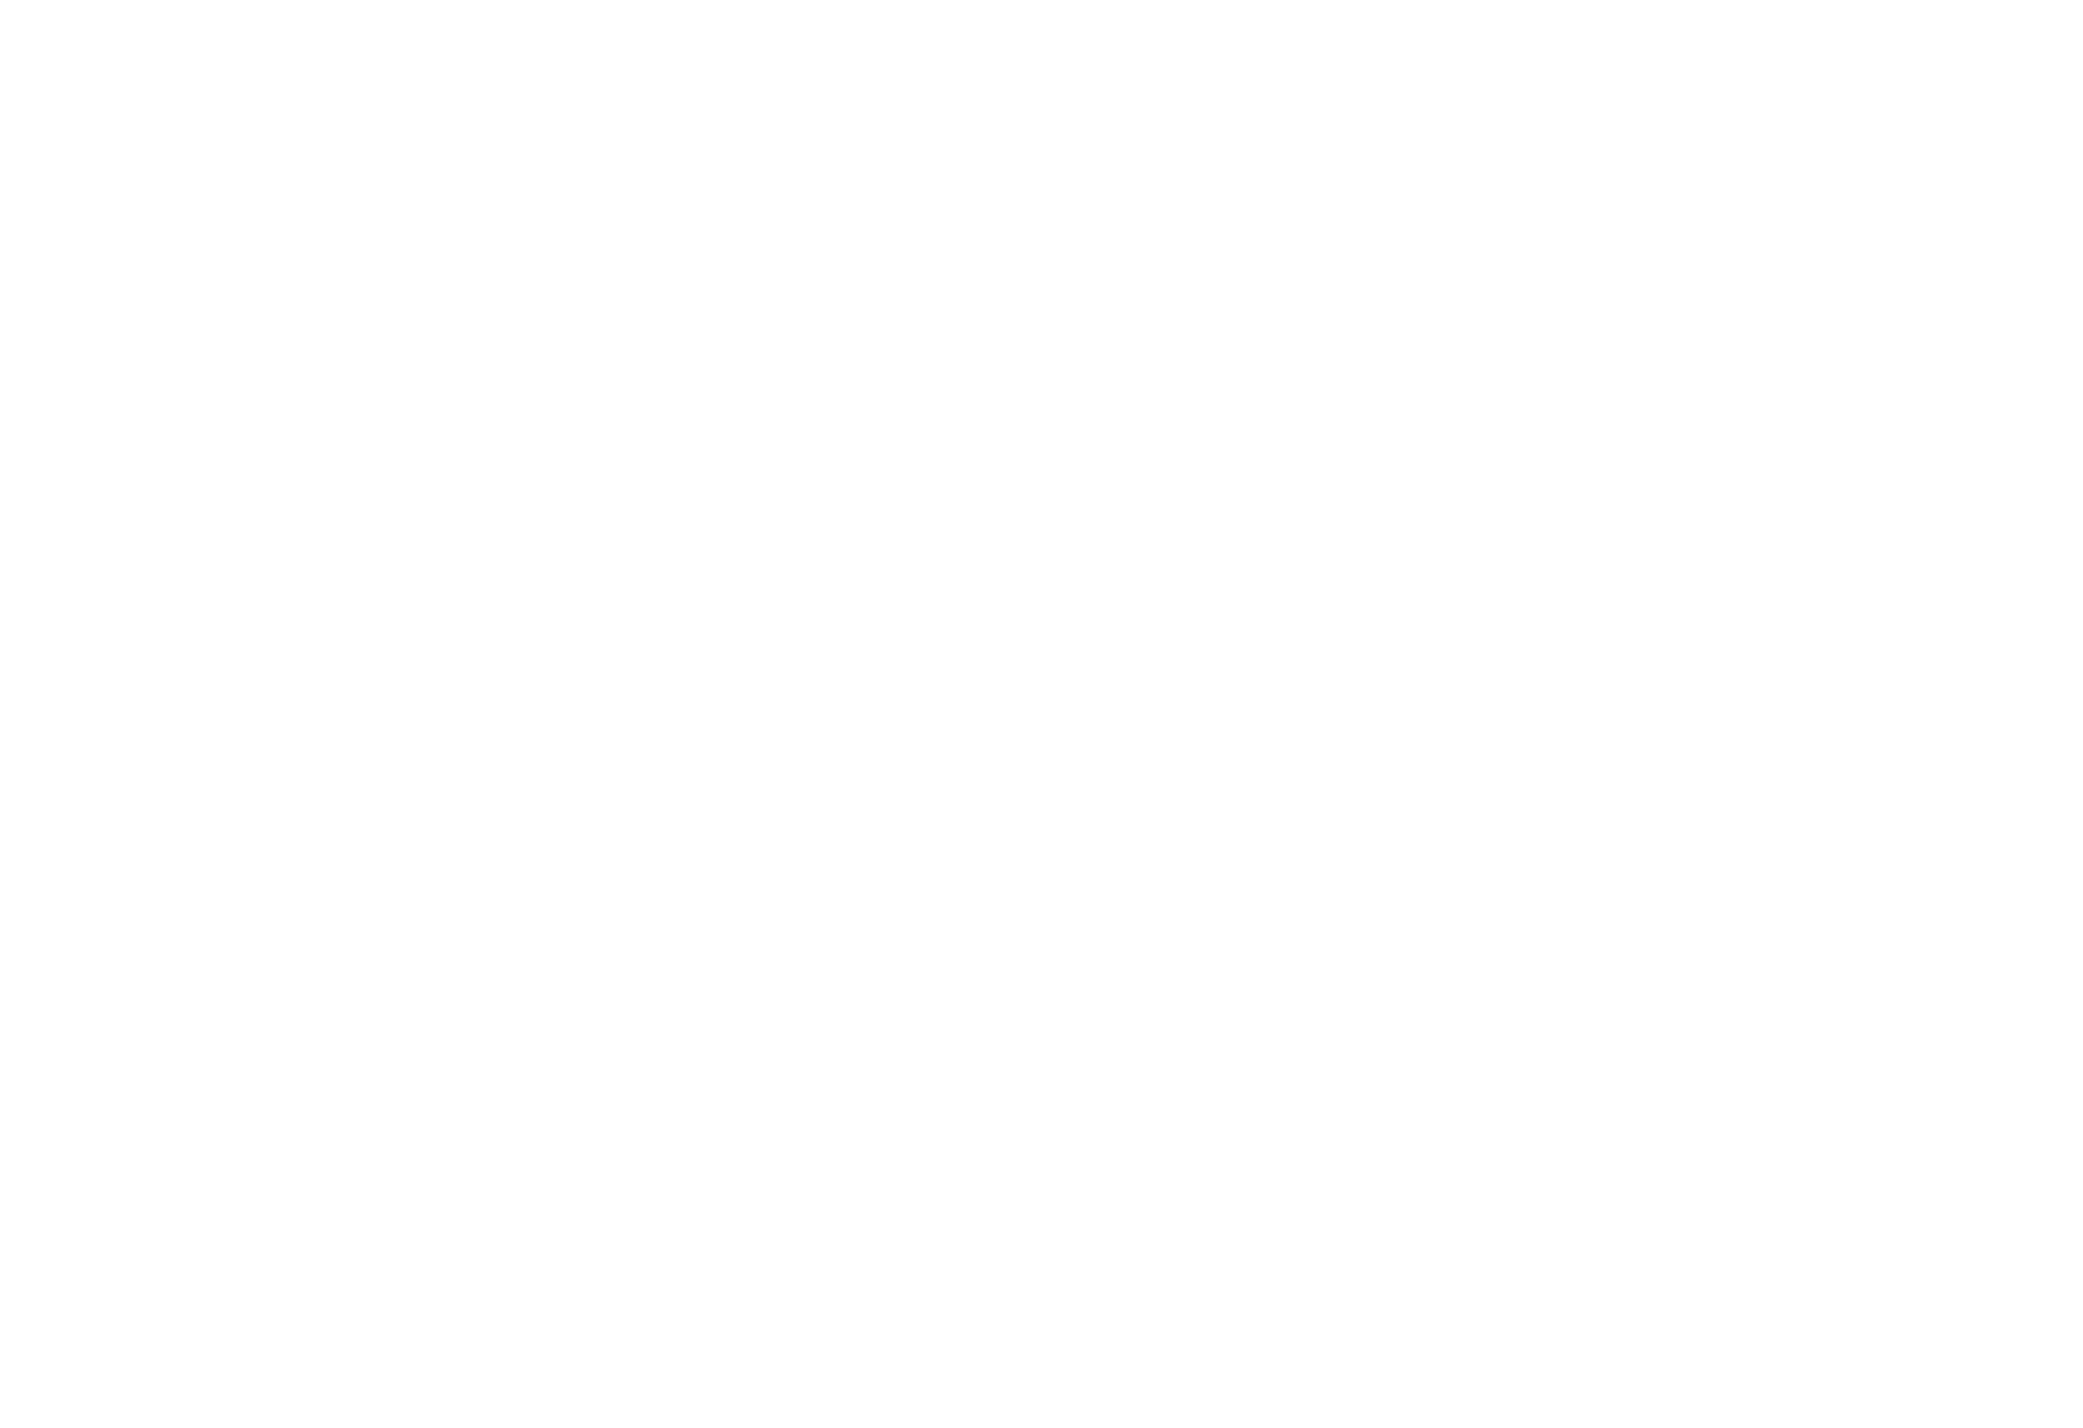 logo_pbpbrandmarkwhite